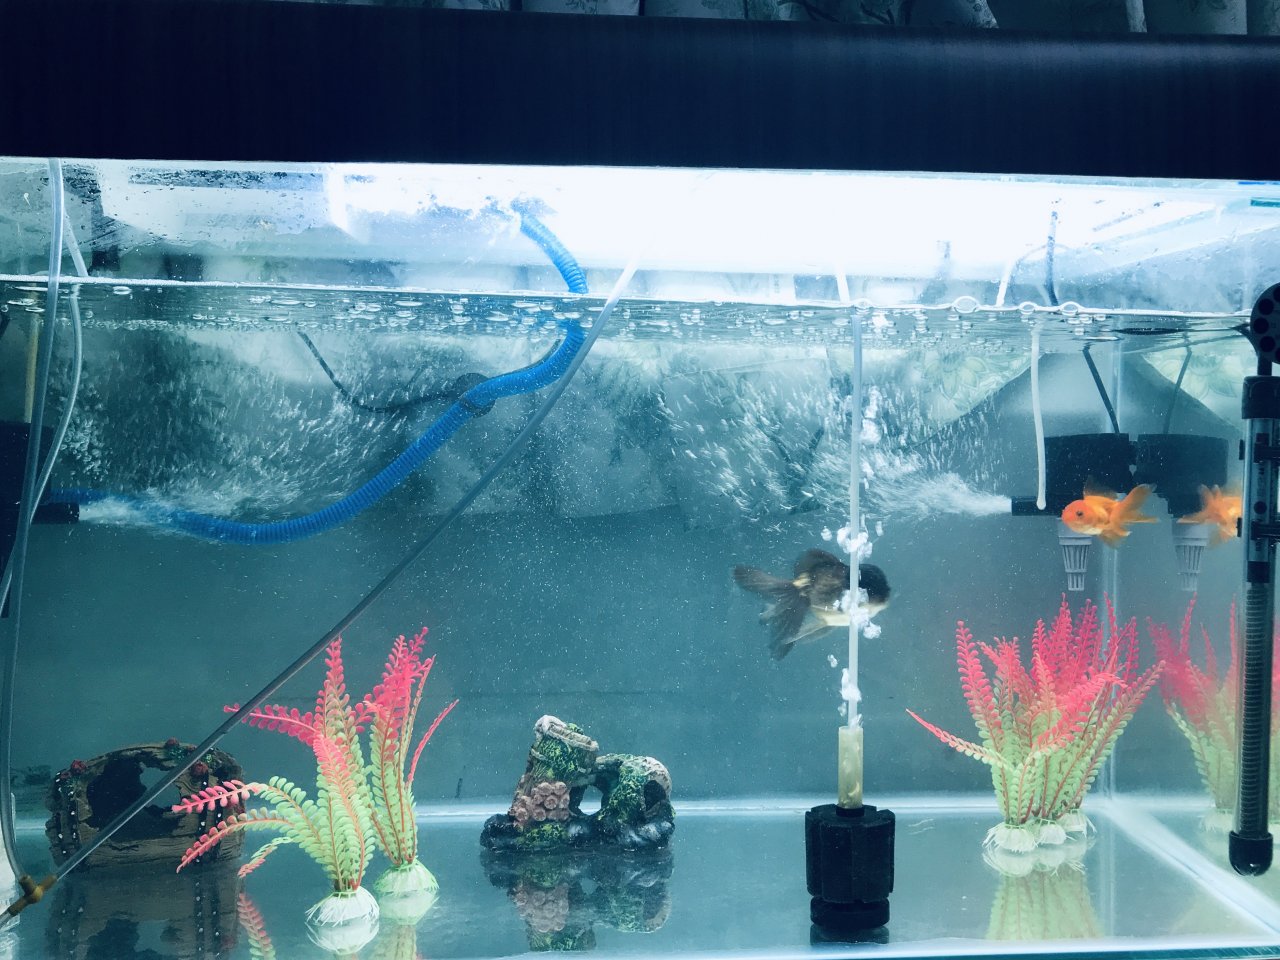 Goldfish Tank  Goldfish tank, Fish aquarium decorations, Goldfish aquarium